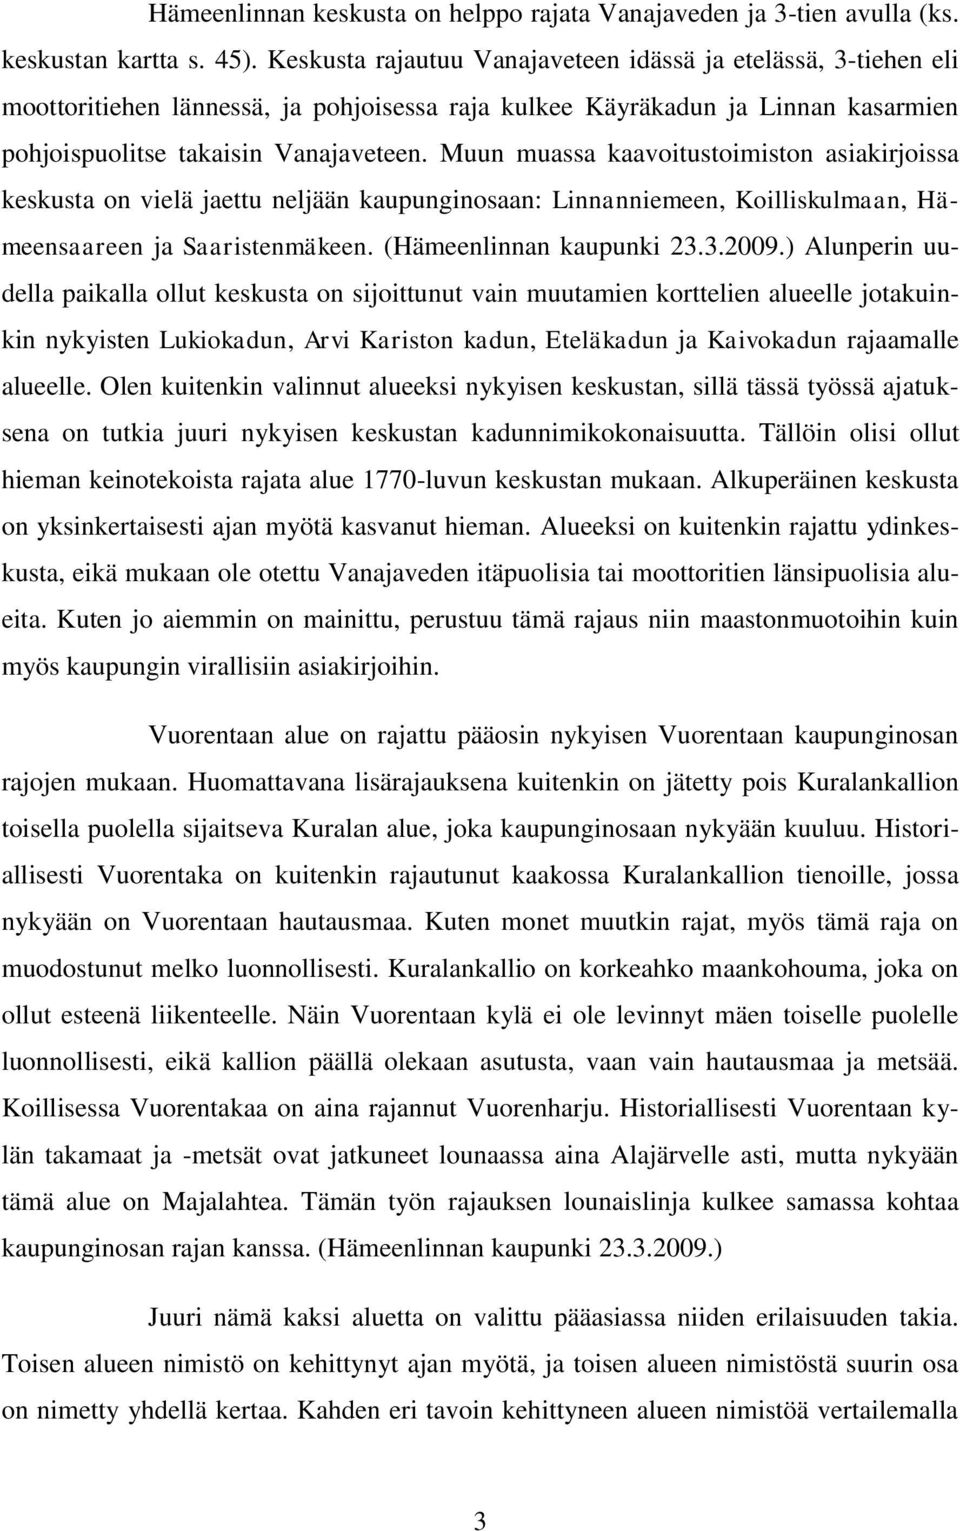 Muun muassa kaavoitustoimiston asiakirjoissa keskusta on vielä jaettu neljään kaupunginosaan: Linnanniemeen, Koilliskulmaan, Hämeensaareen ja Saaristenmäkeen. (Hämeenlinnan kaupunki 23.3.2009.